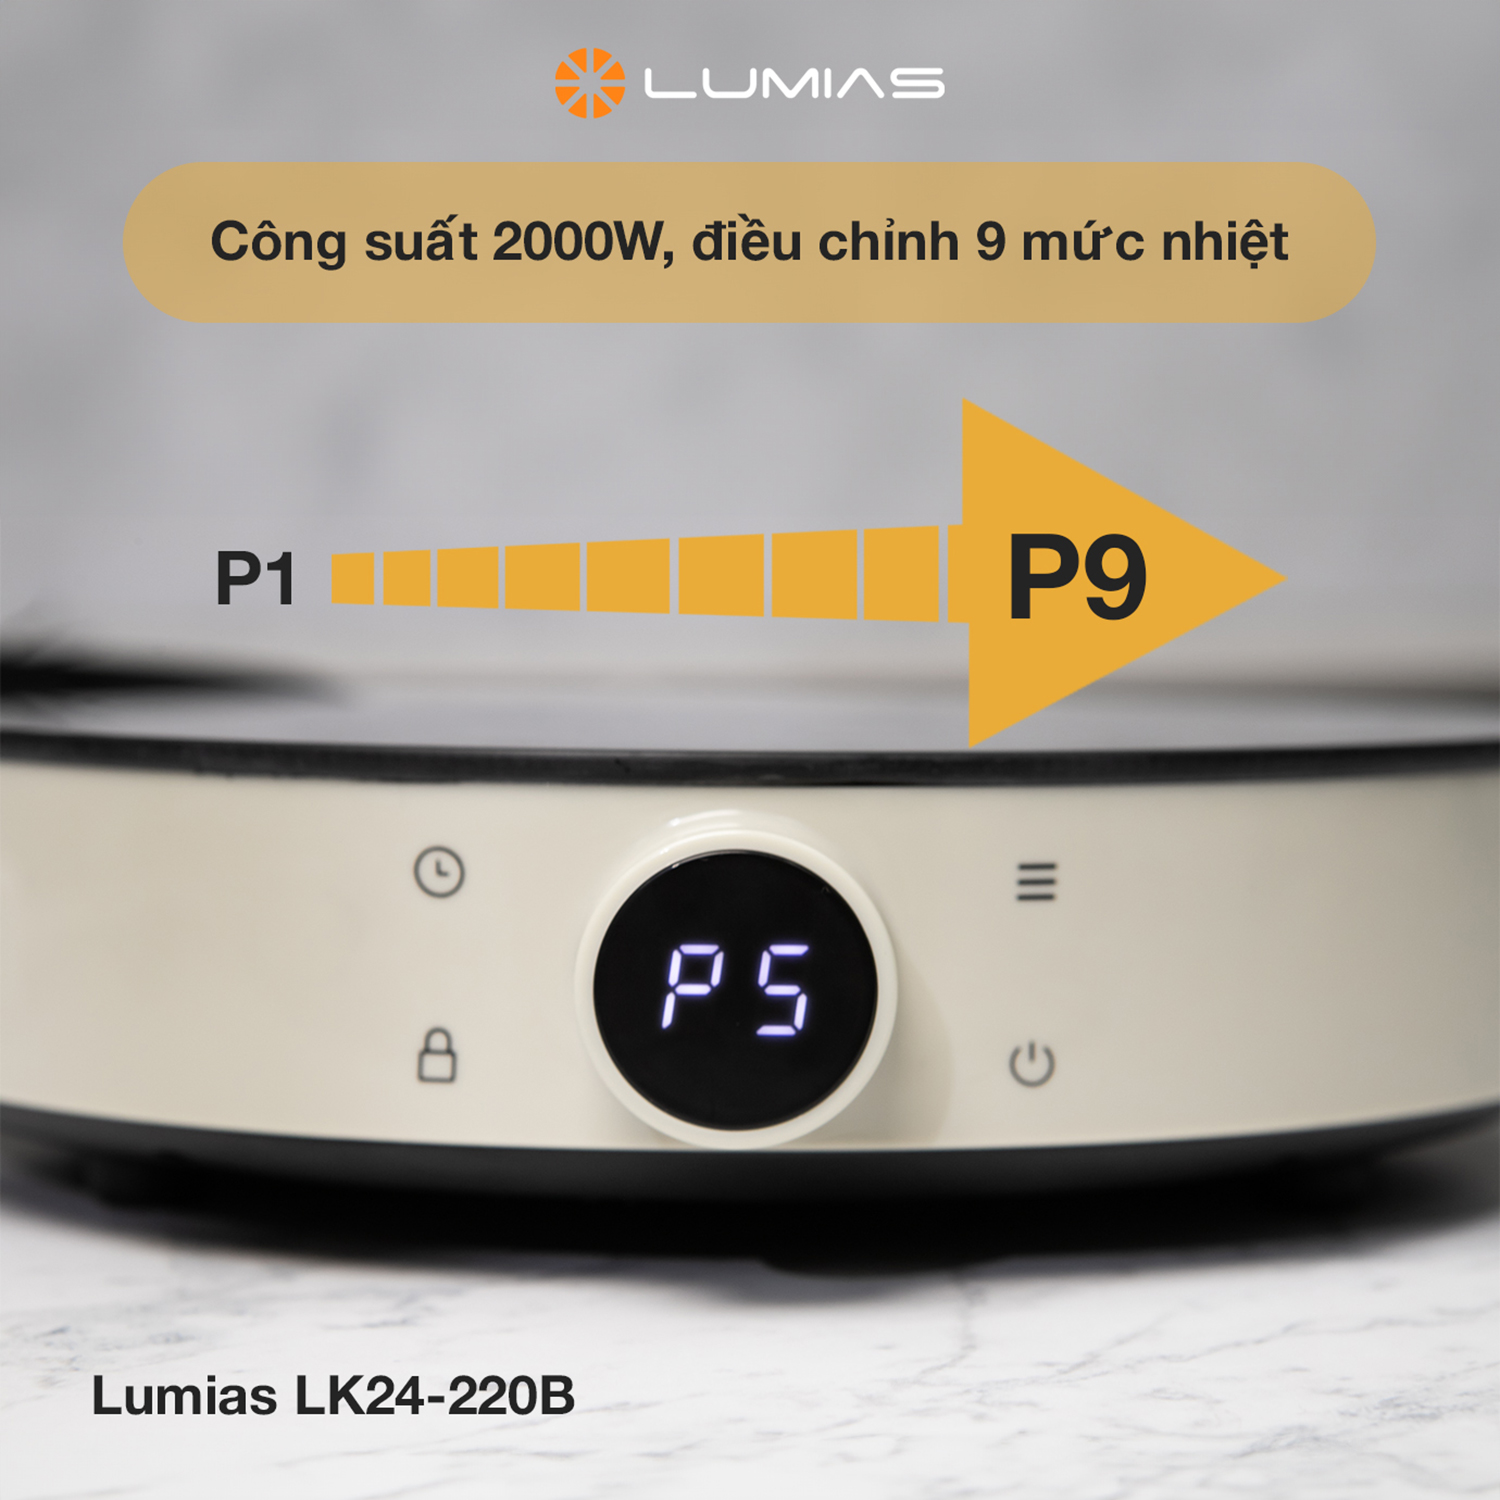 Bếp từ Lumias LK24-220B lý tưởng với 9 mức nhiệt độ